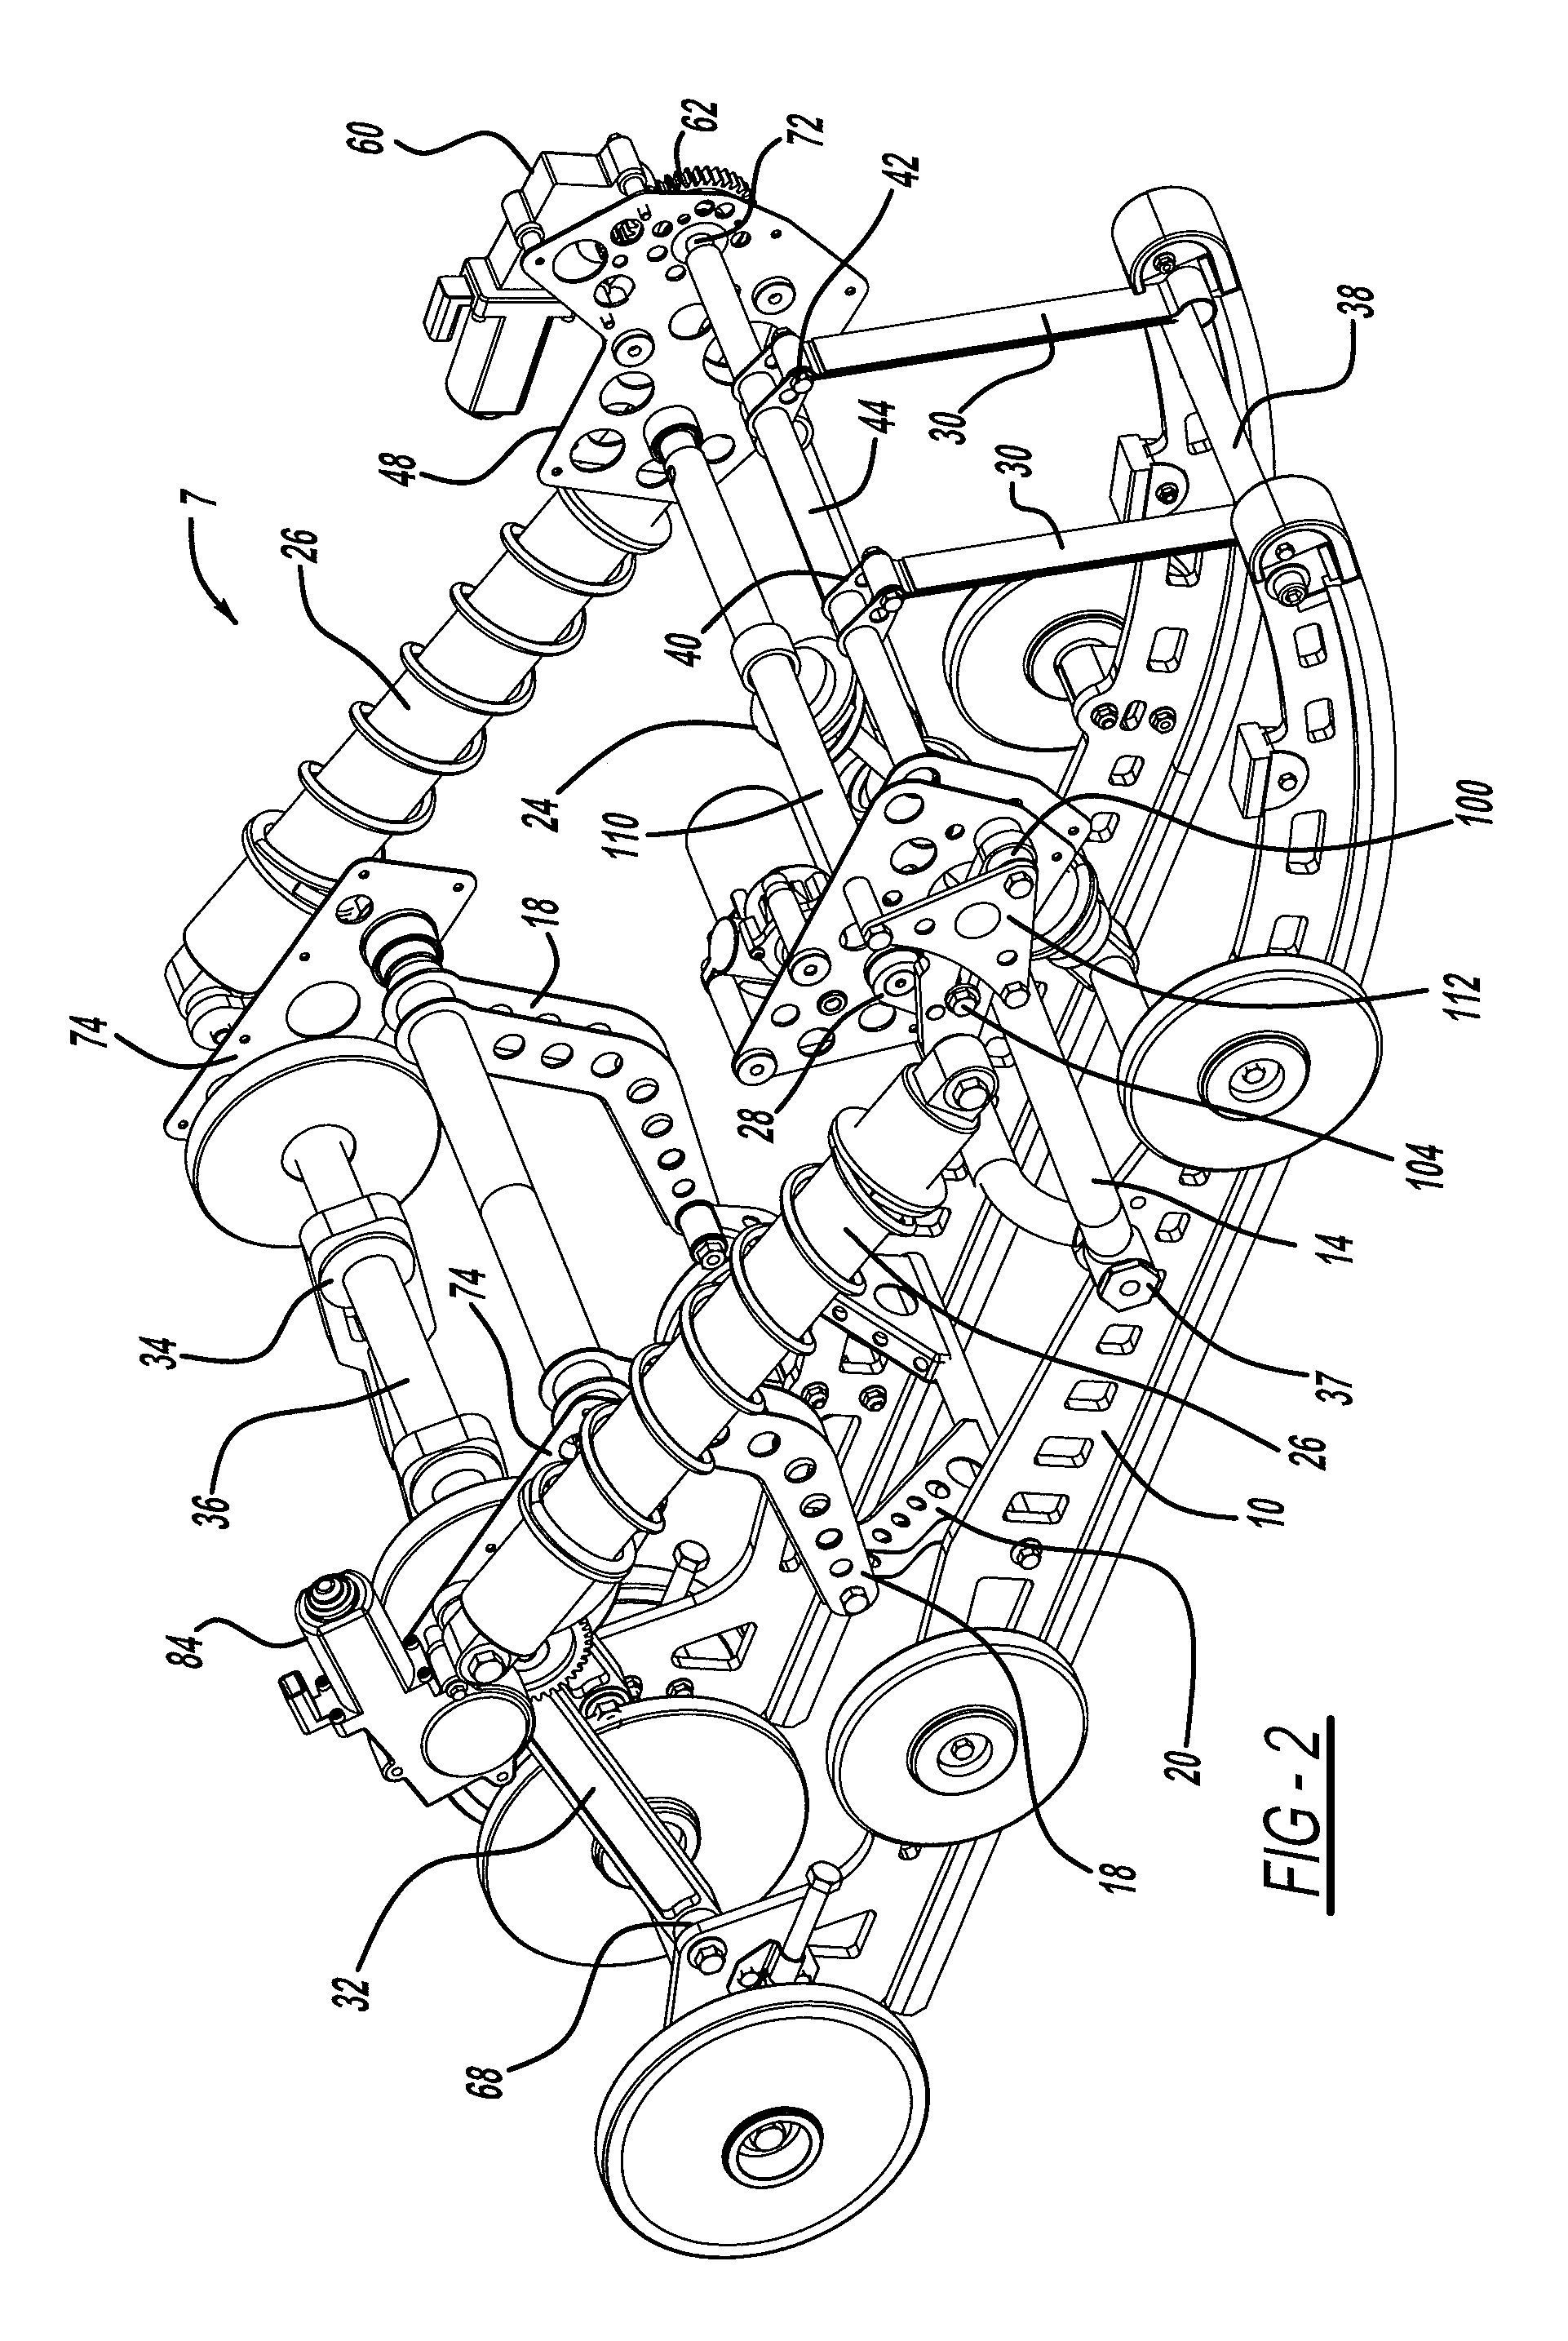 Semi-active snowmobile rear suspension